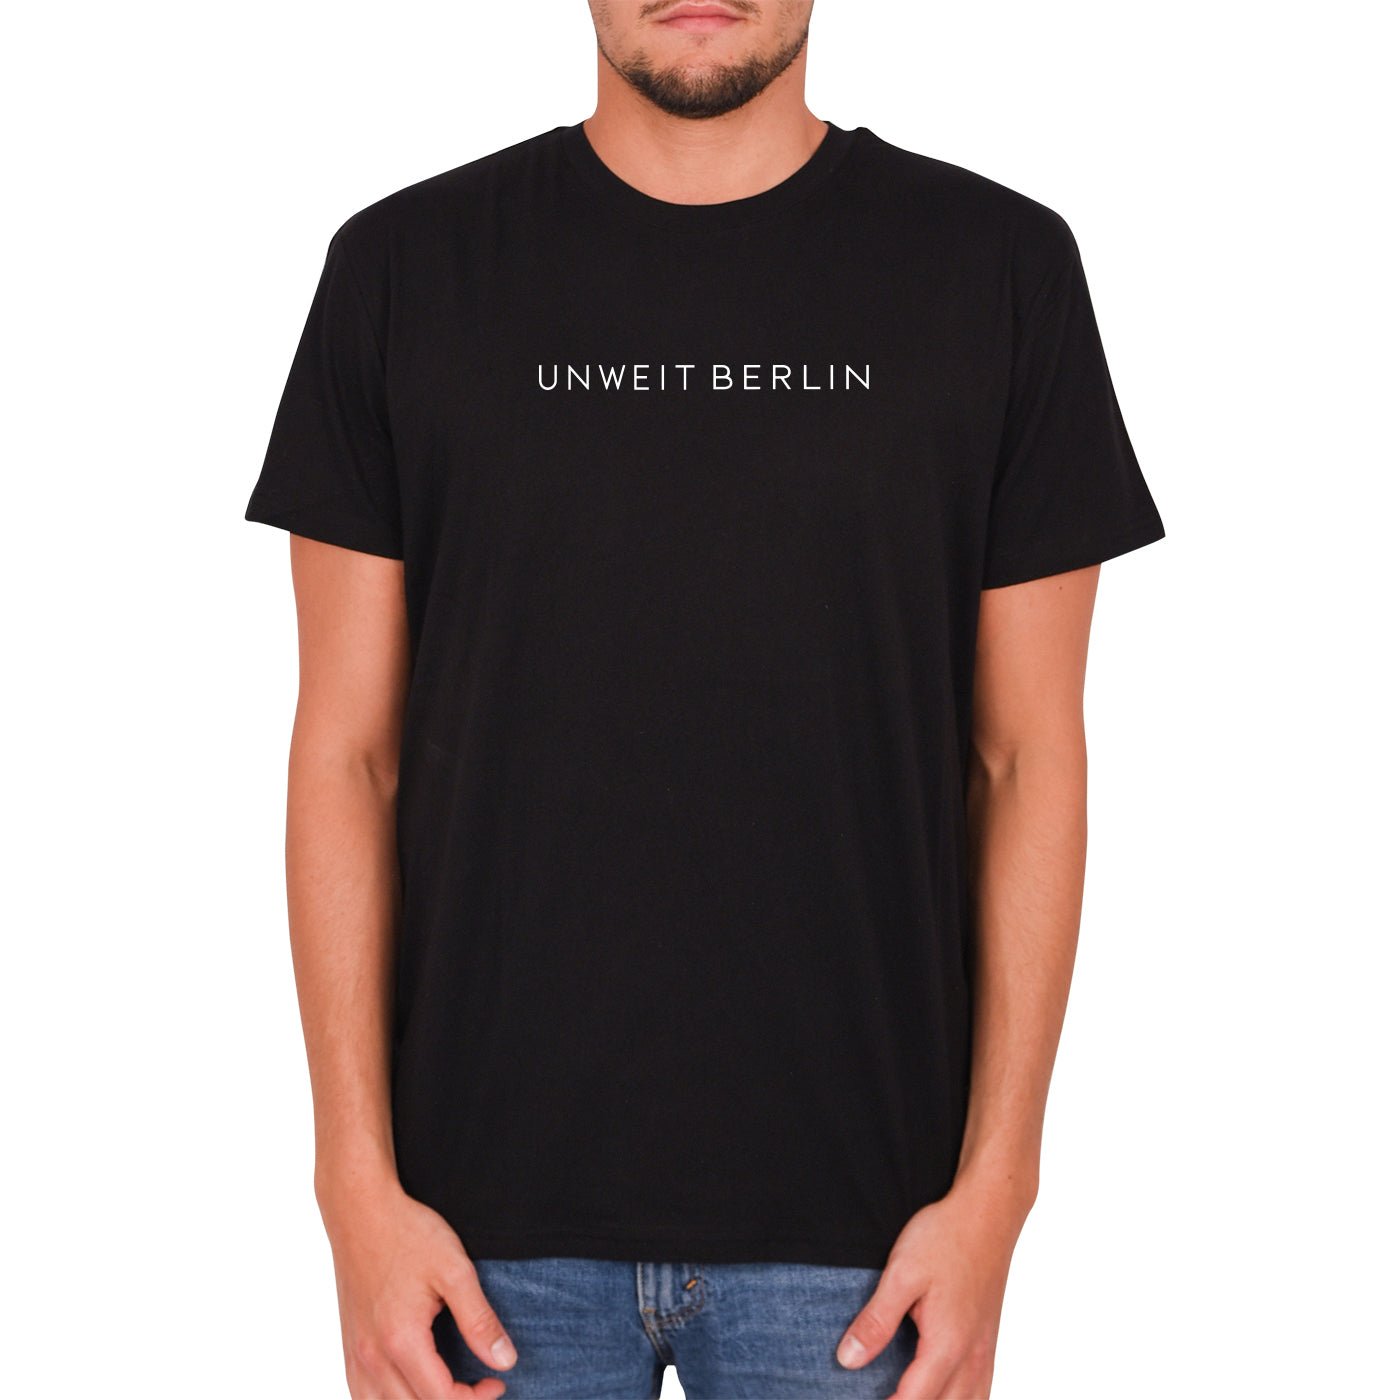 Unweit Berlin - Herren T-Shirt - Kleinigkeit - Unweit Berlin